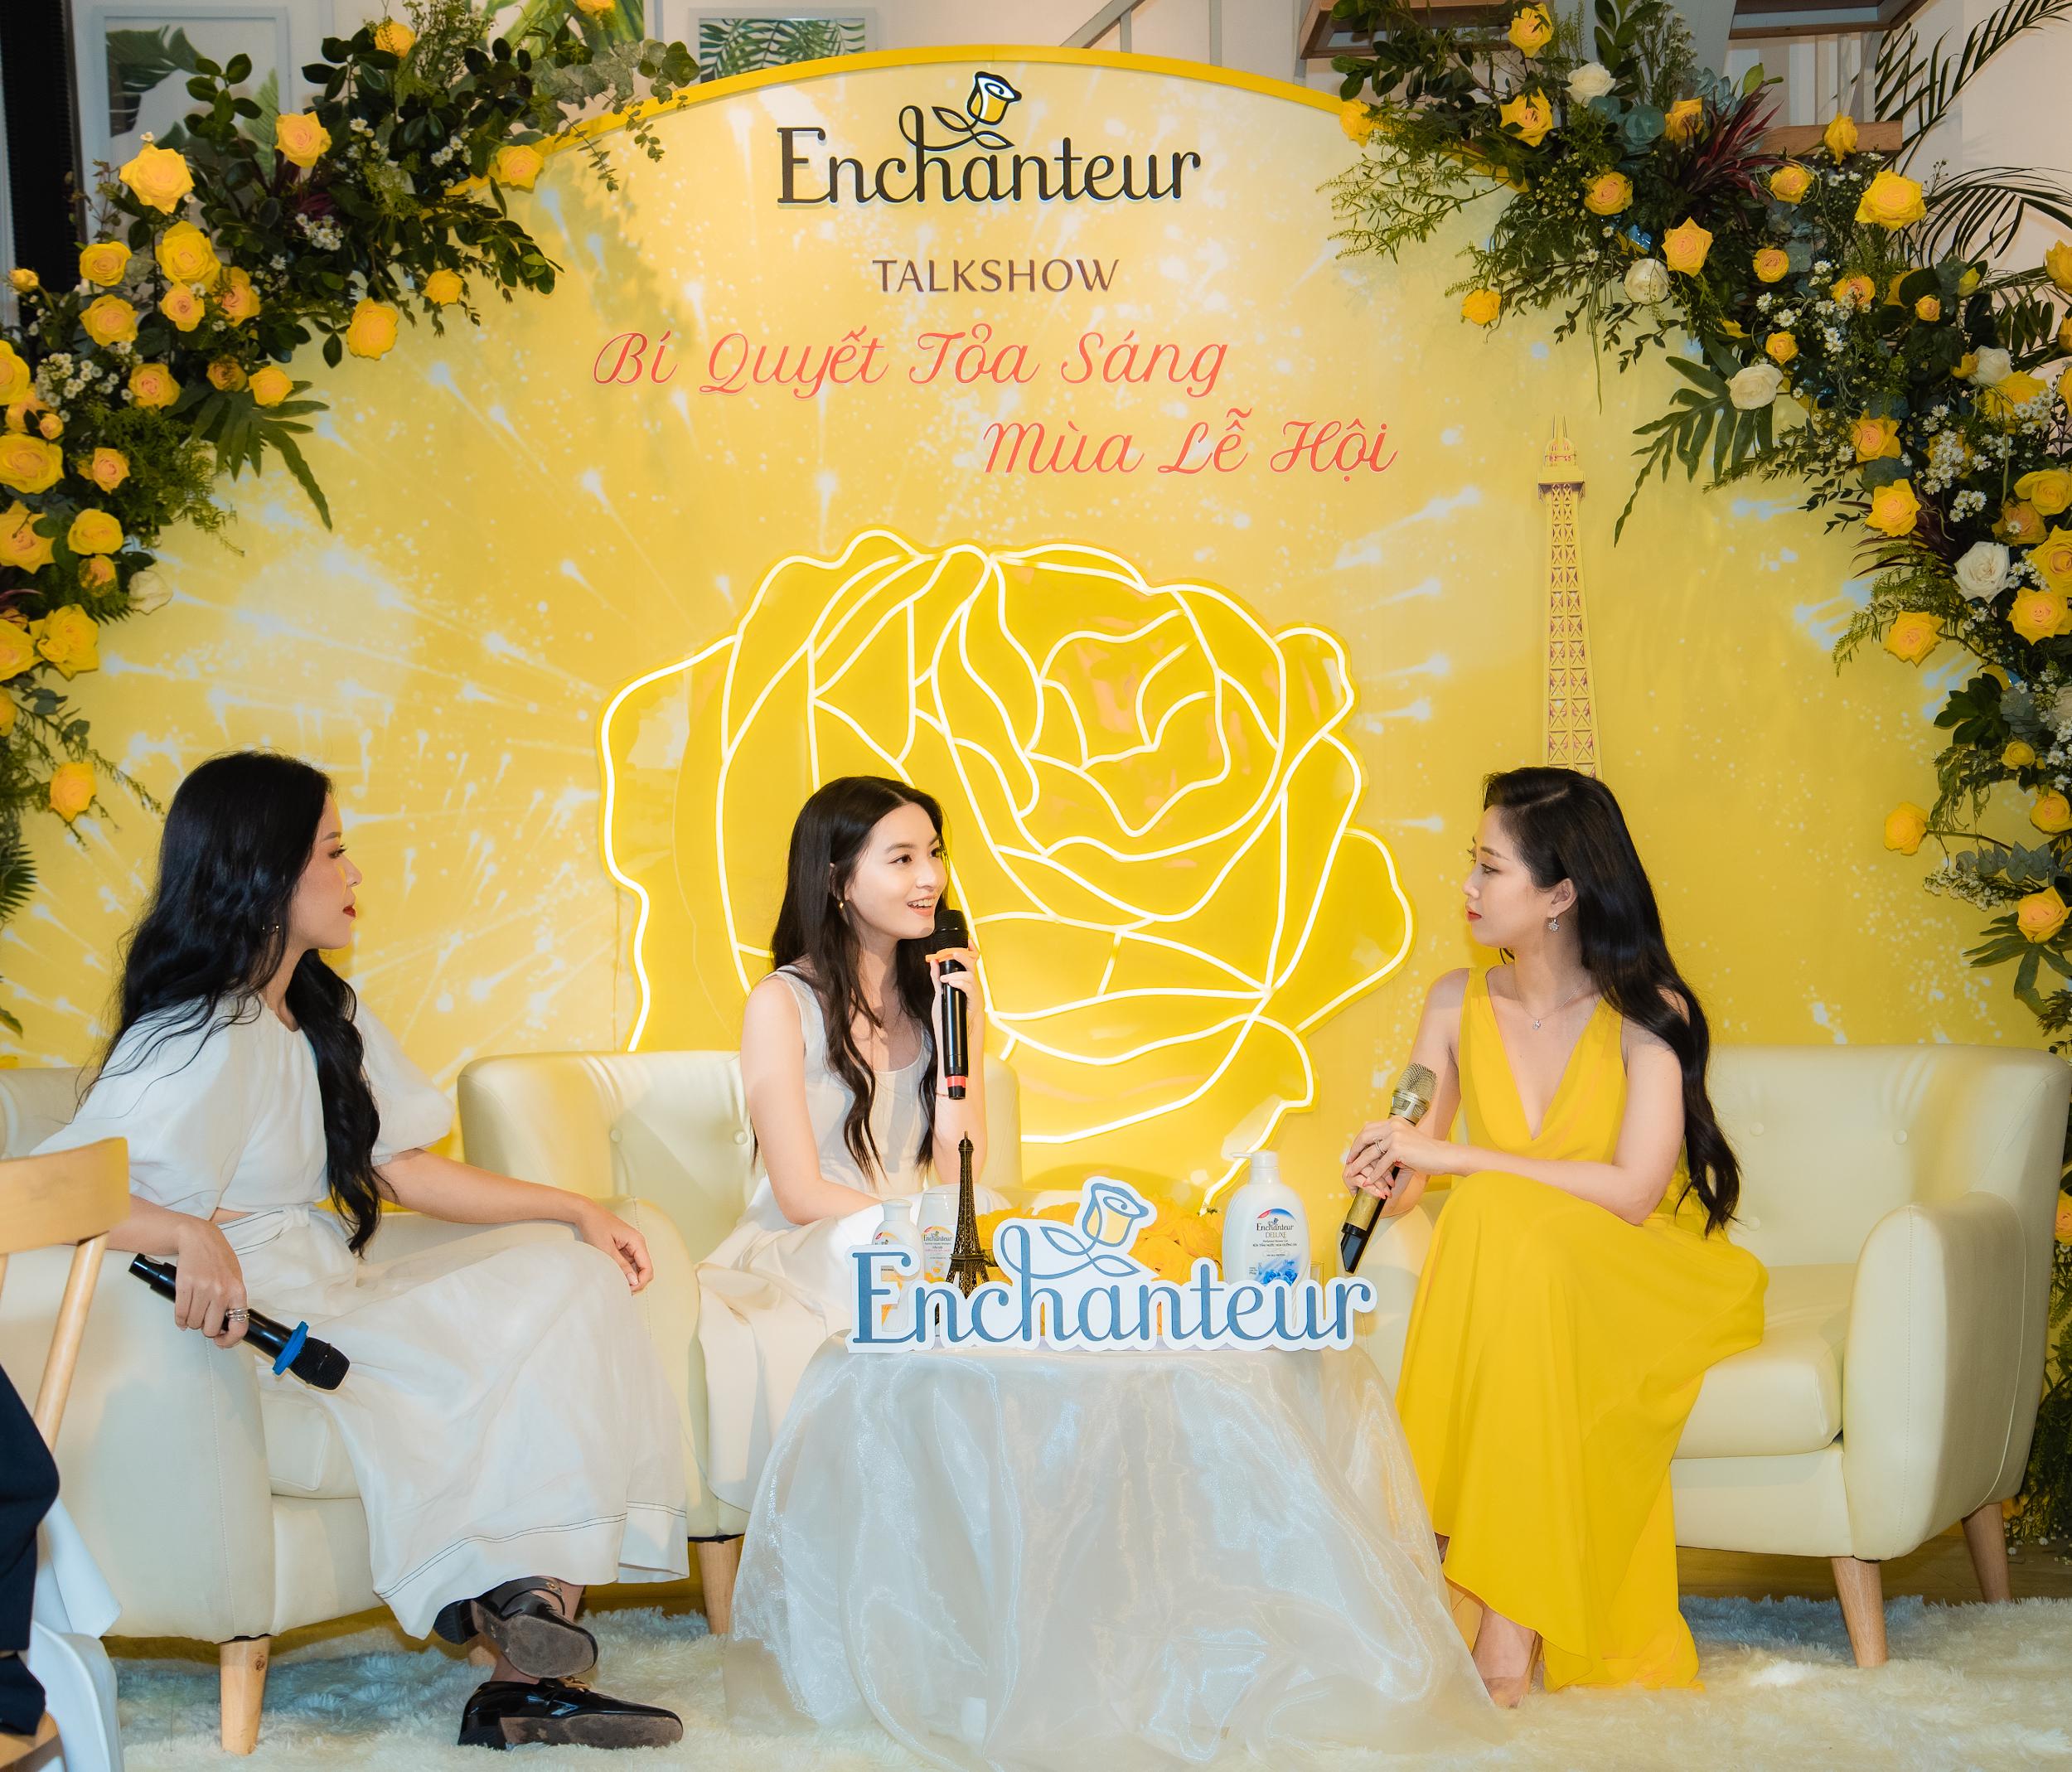 Thảo Tâm, An Phương, Liêu Hà Trinh cùng nhau trò chuyện về bí quyết tỏa sáng mùa lễ hội với Enchanteur - ảnh 6